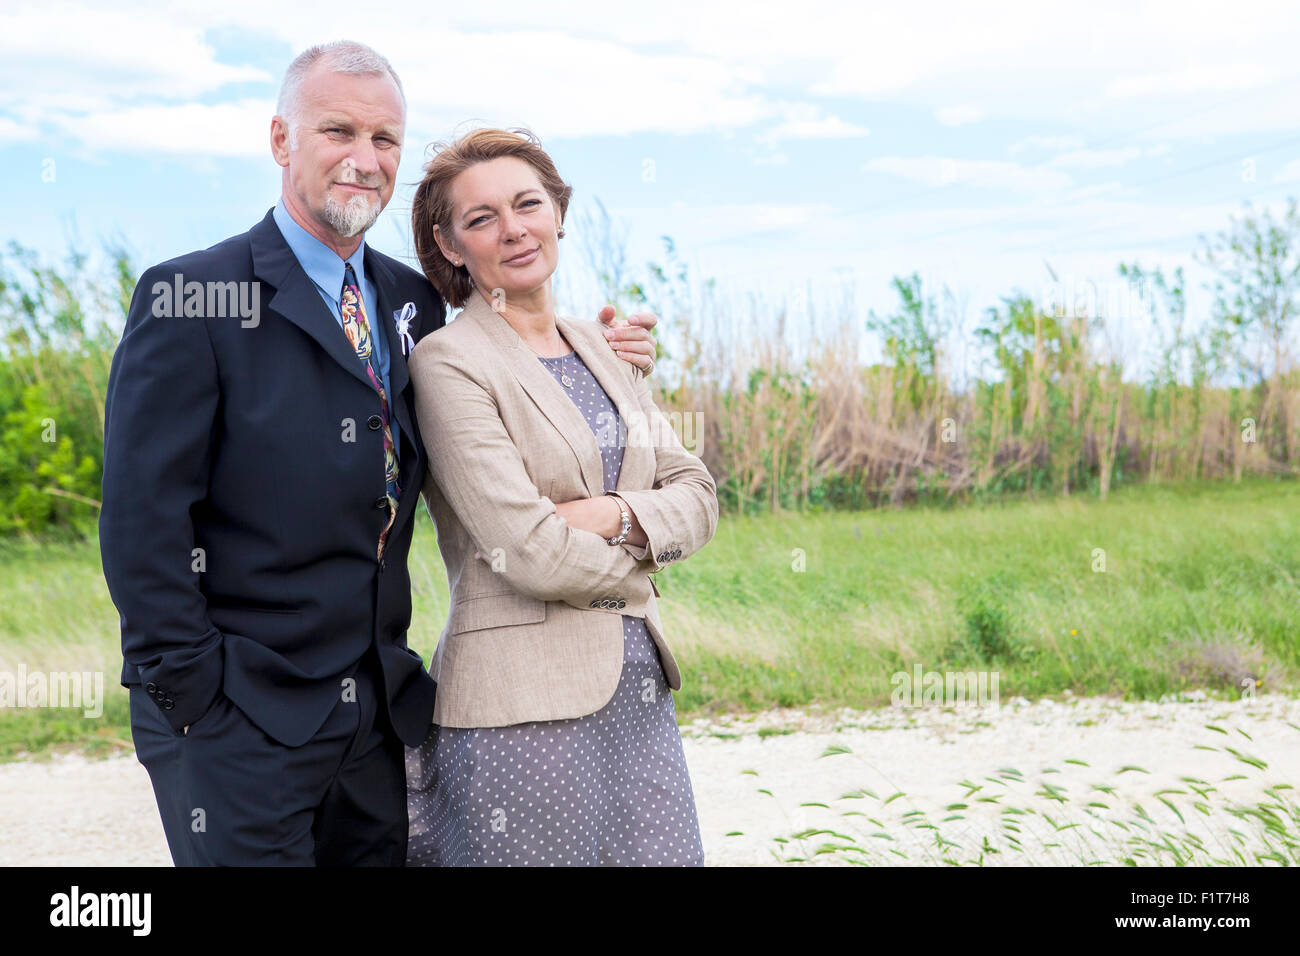 Portrait of senior couple outdoors Banque D'Images